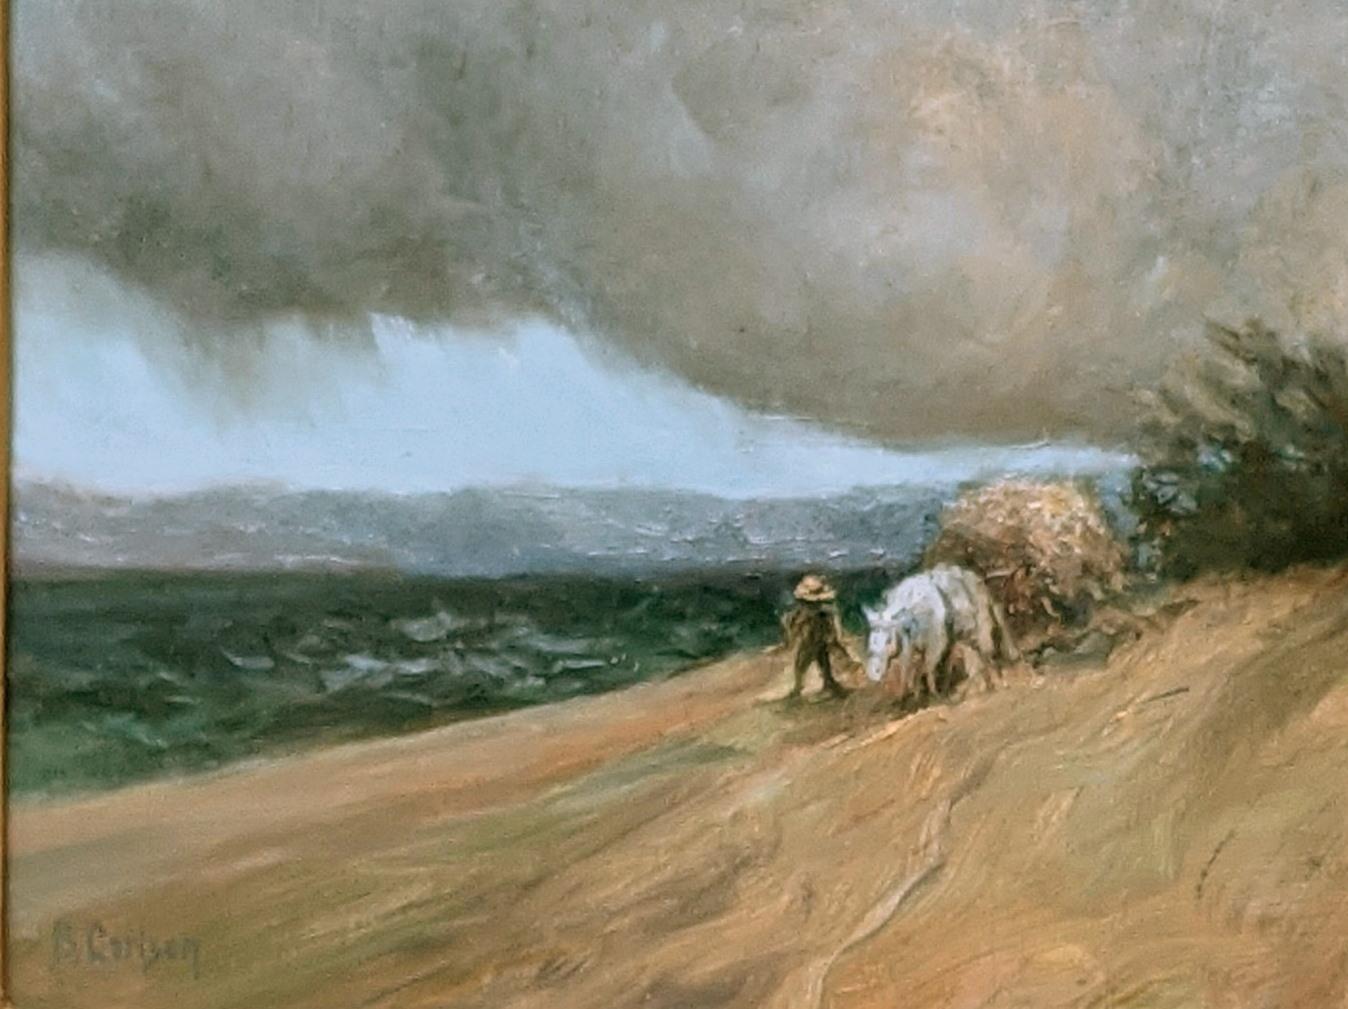  Dramatische Landschaft mit bedrohlichen Wolken bedroht einen müden Bauern aus dem 19. (Realismus), Painting, von Beth Carlson